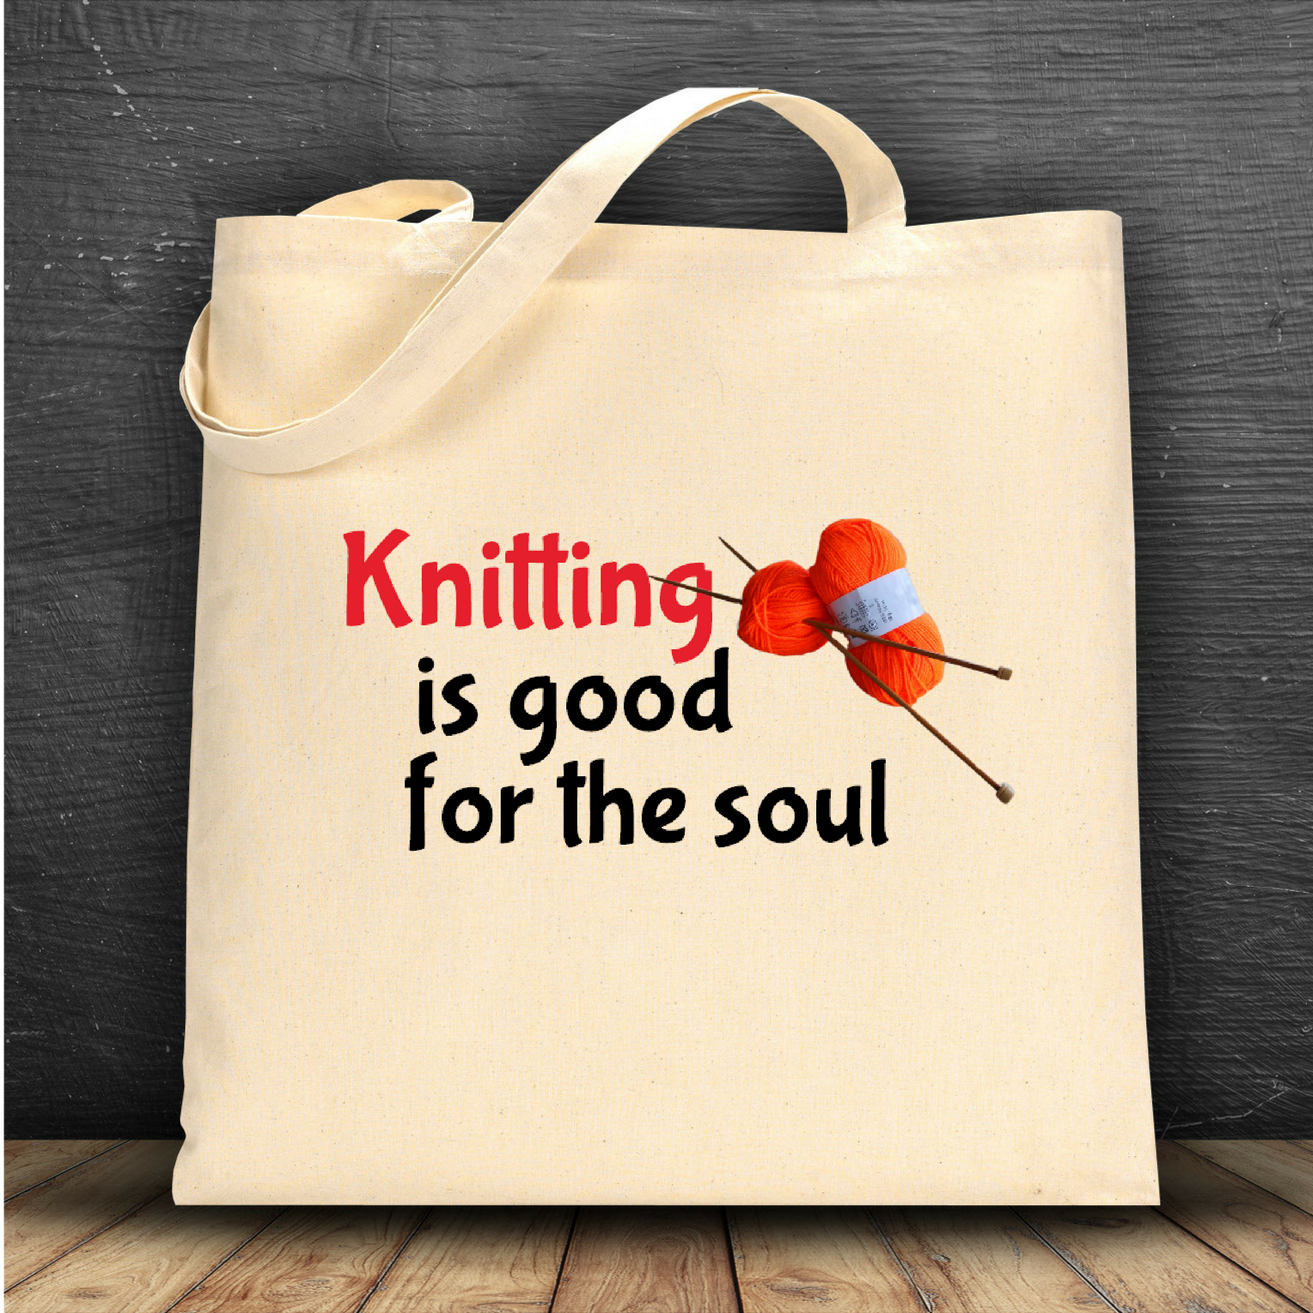 Knitting Bag, Shopping Bag, Canvas Tote Bag, Printed Tote Bag, Ballsack,  Medium Canvas Tote, Yarn Bag, Knitting Bag, Funny Bag, Tote Bag 